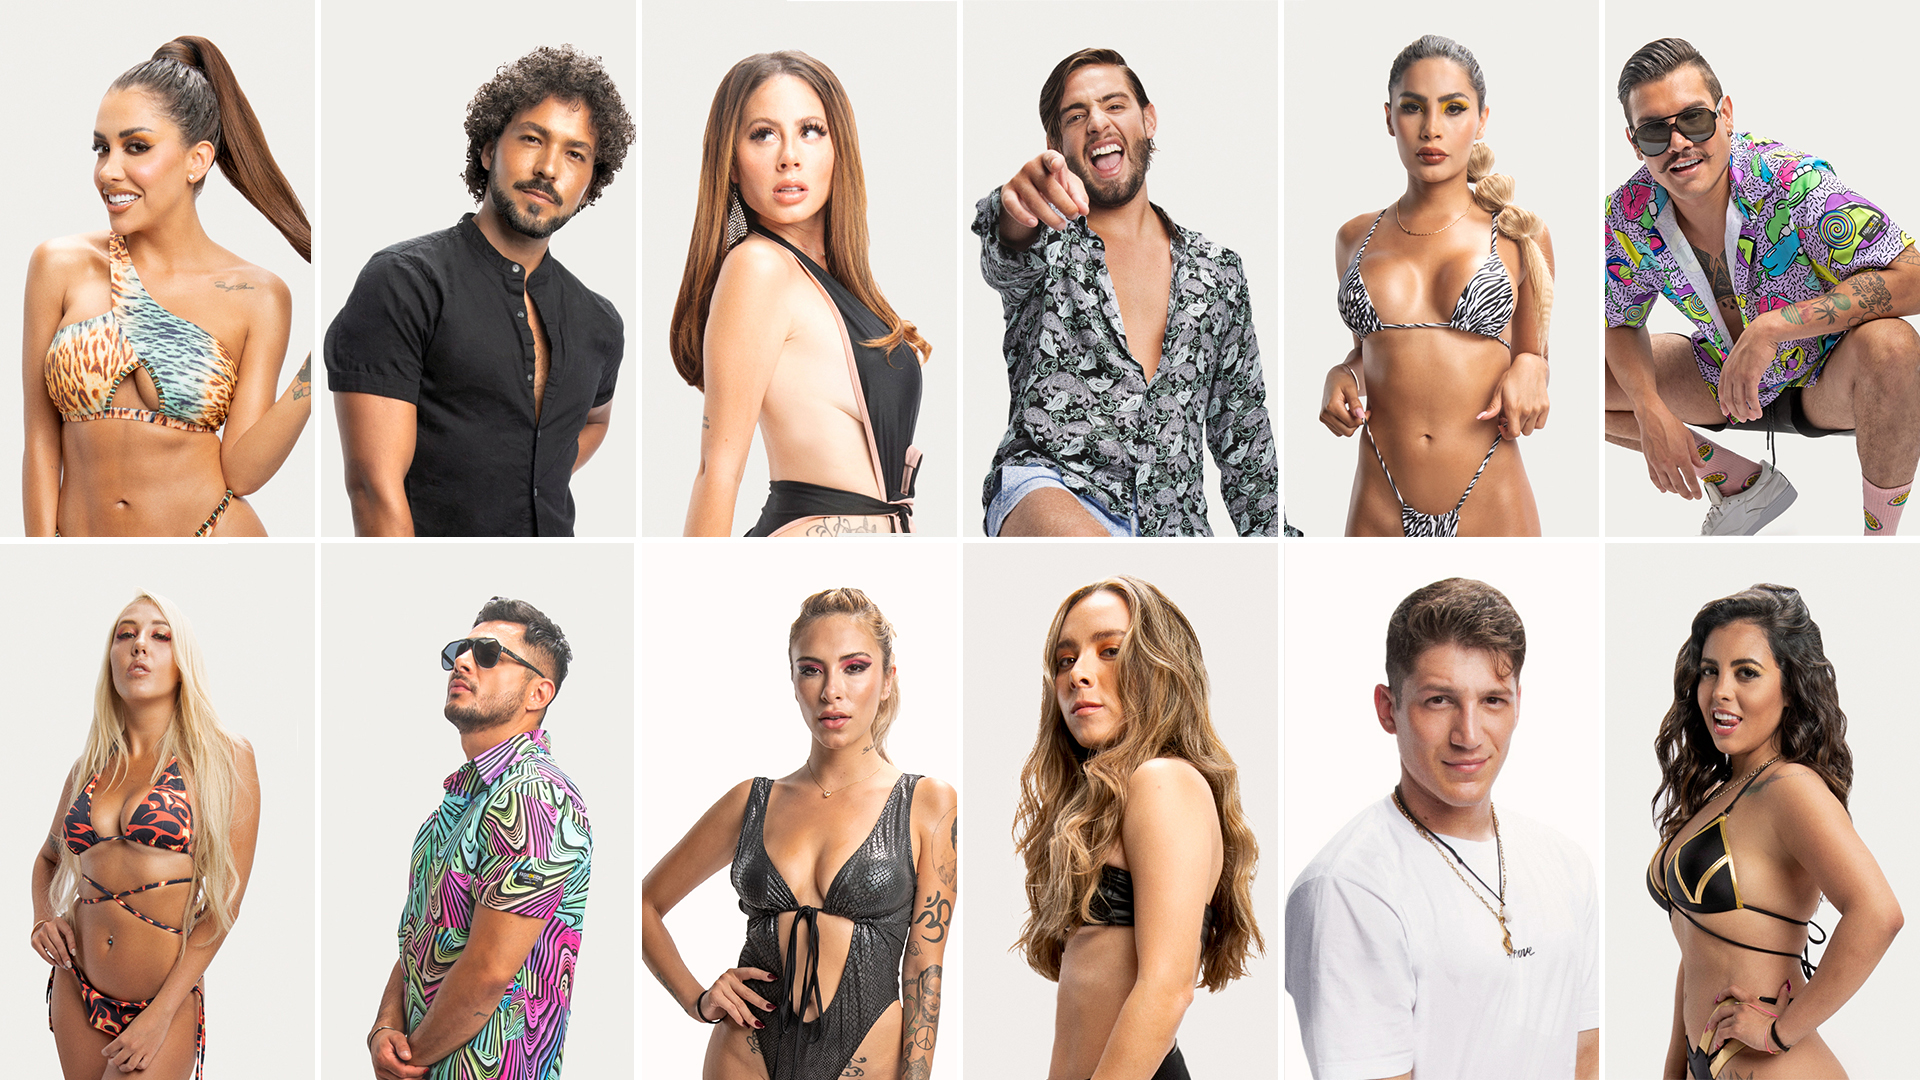 Ya cada vez falta menos para saber cómo fue el degenere de estos modelos e influencers de Acapulco Shore (Foto: Cortesía MTVLA)